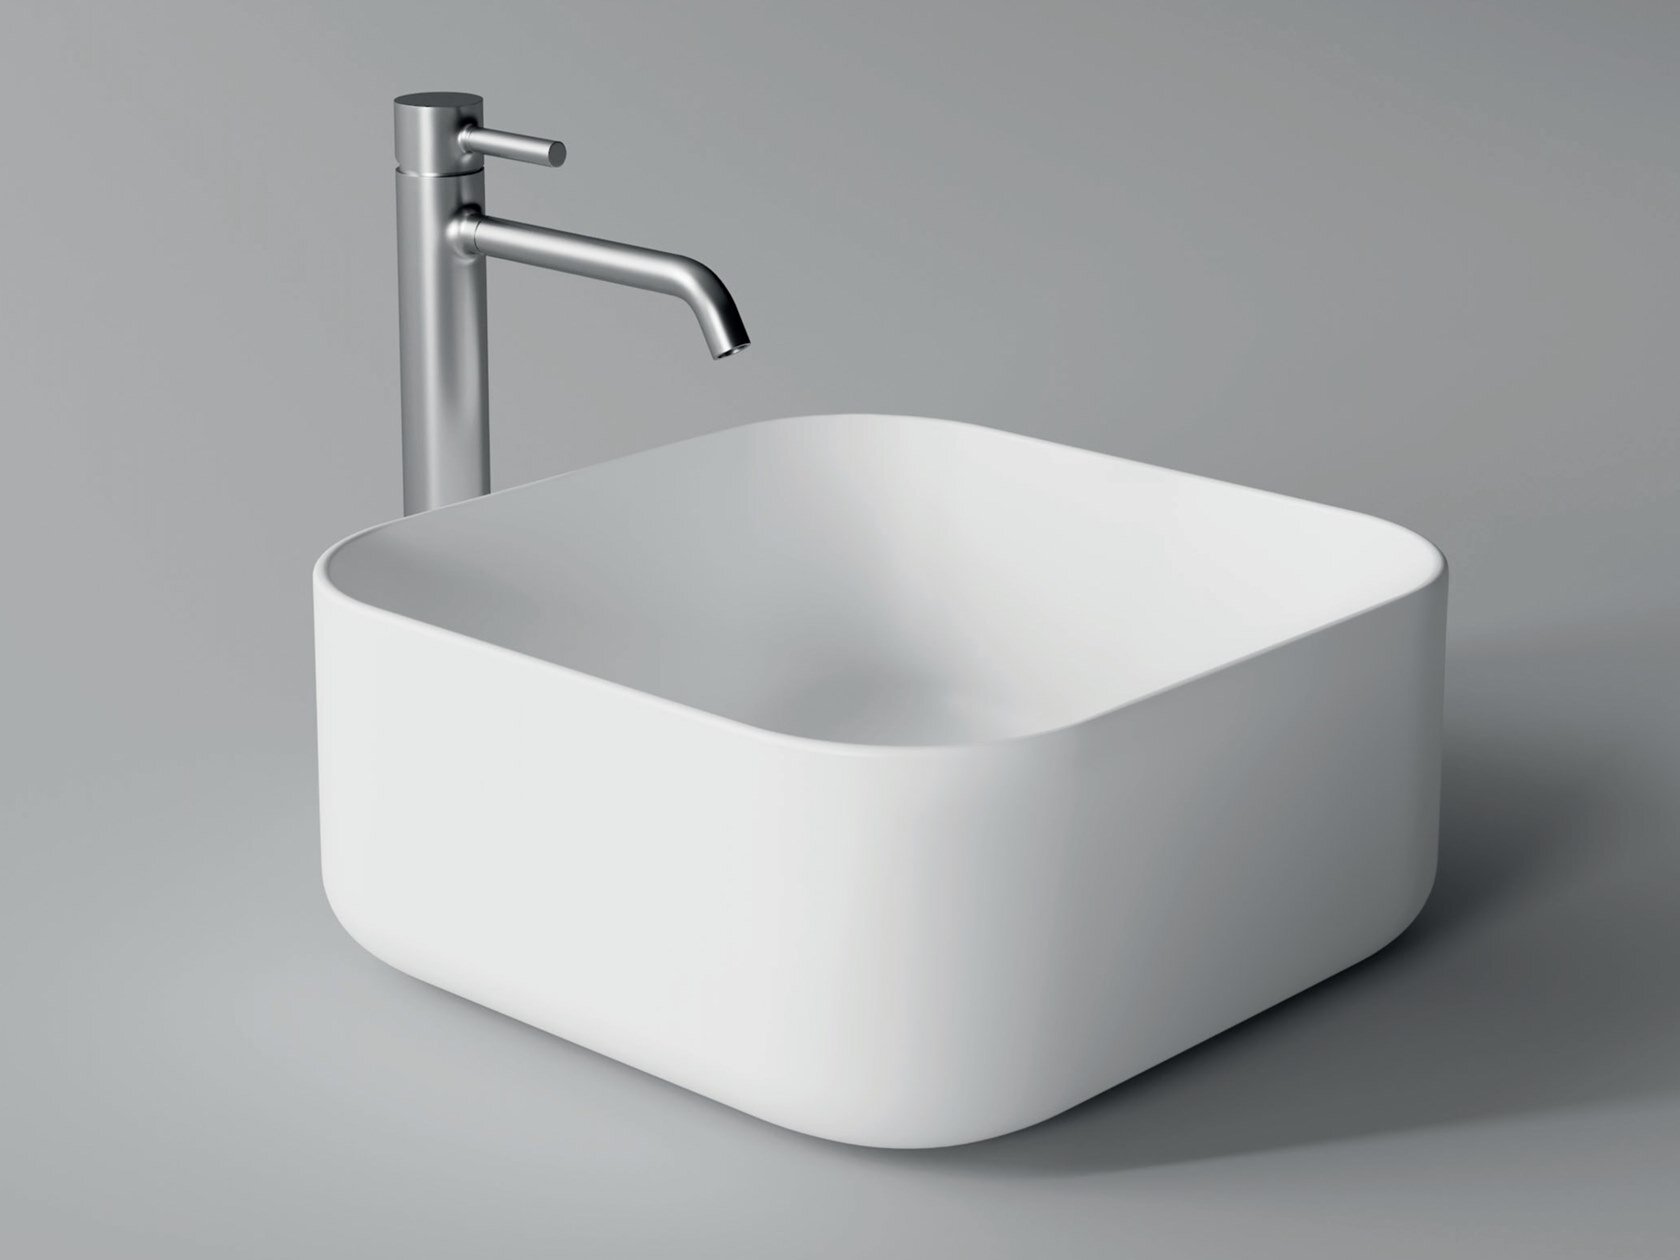 2b_UNICA-Square-washbasin-Alice-Ceramica-365384-rel7d224868.jpeg